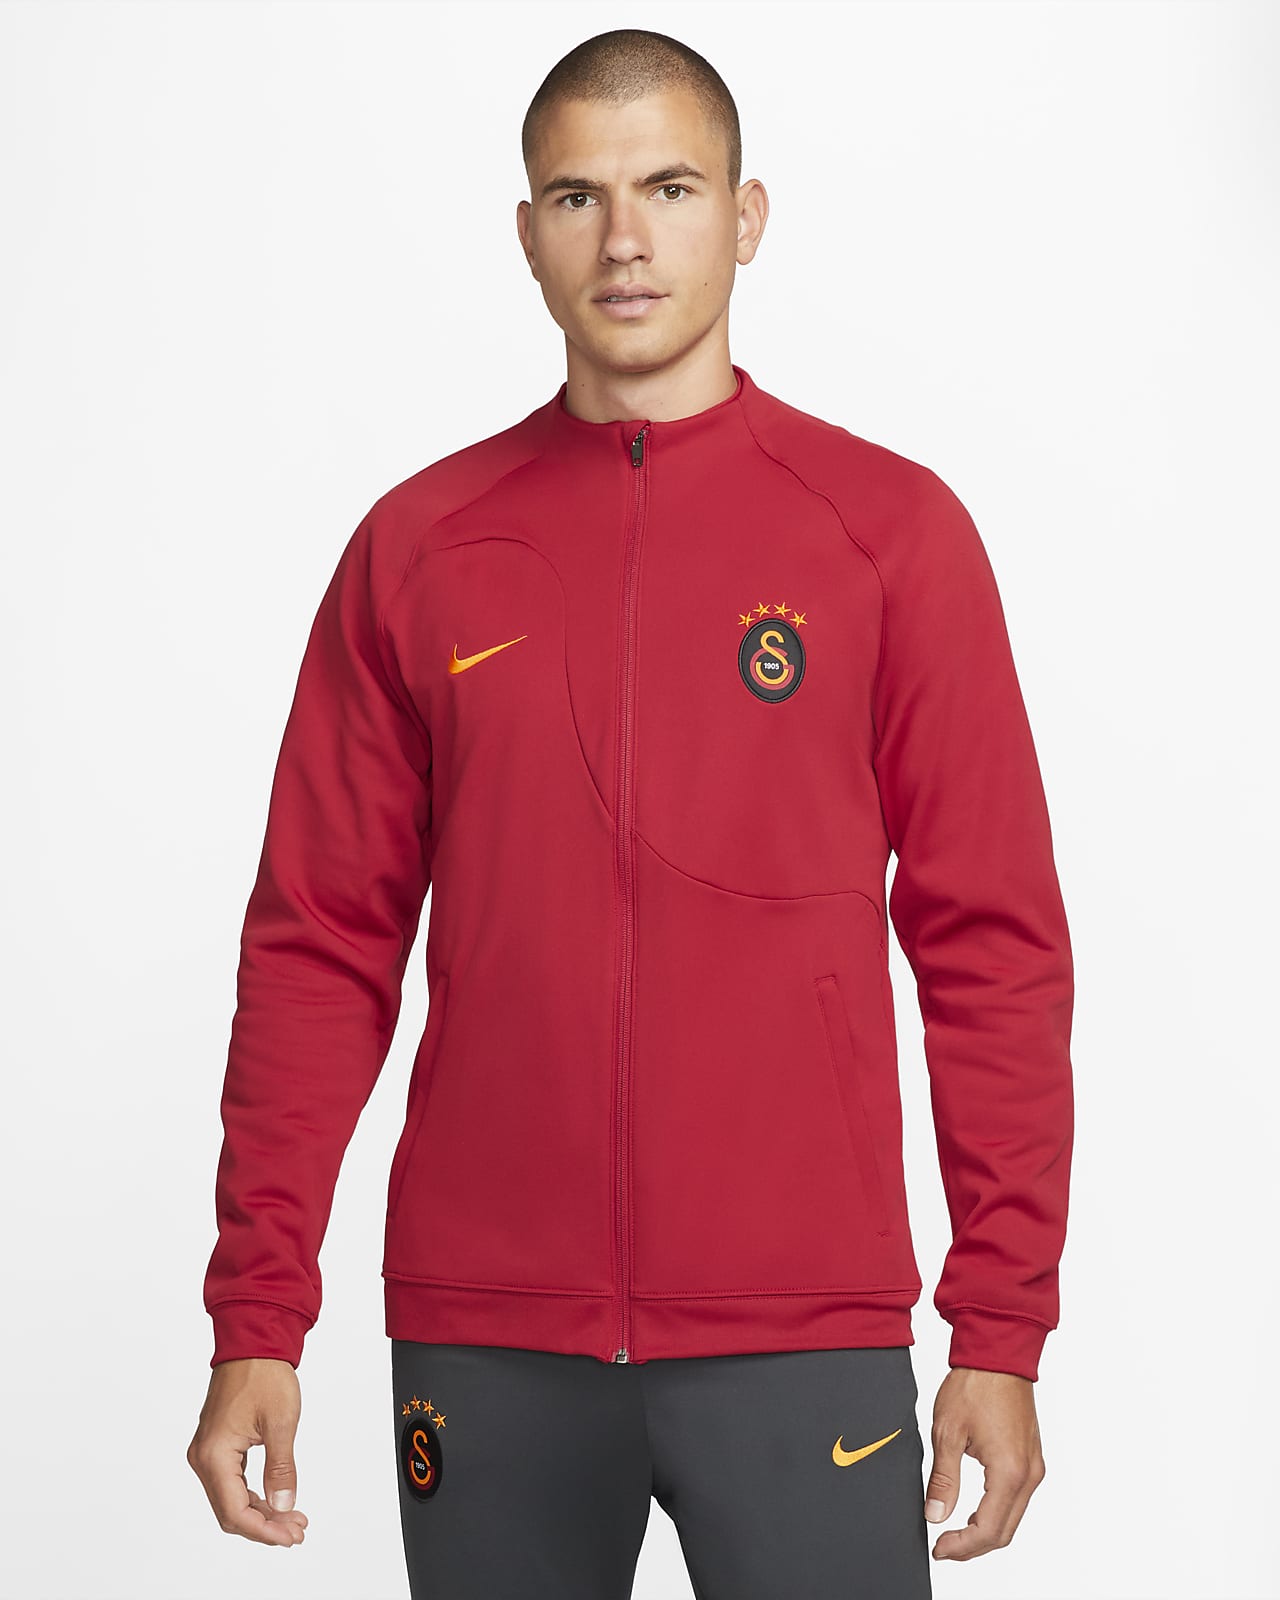 Berg Vesuvius Oriëntatiepunt Ik heb een Engelse les Galatasaray Academy Pro Nike Fußball-Jacke für Herren. Nike DE